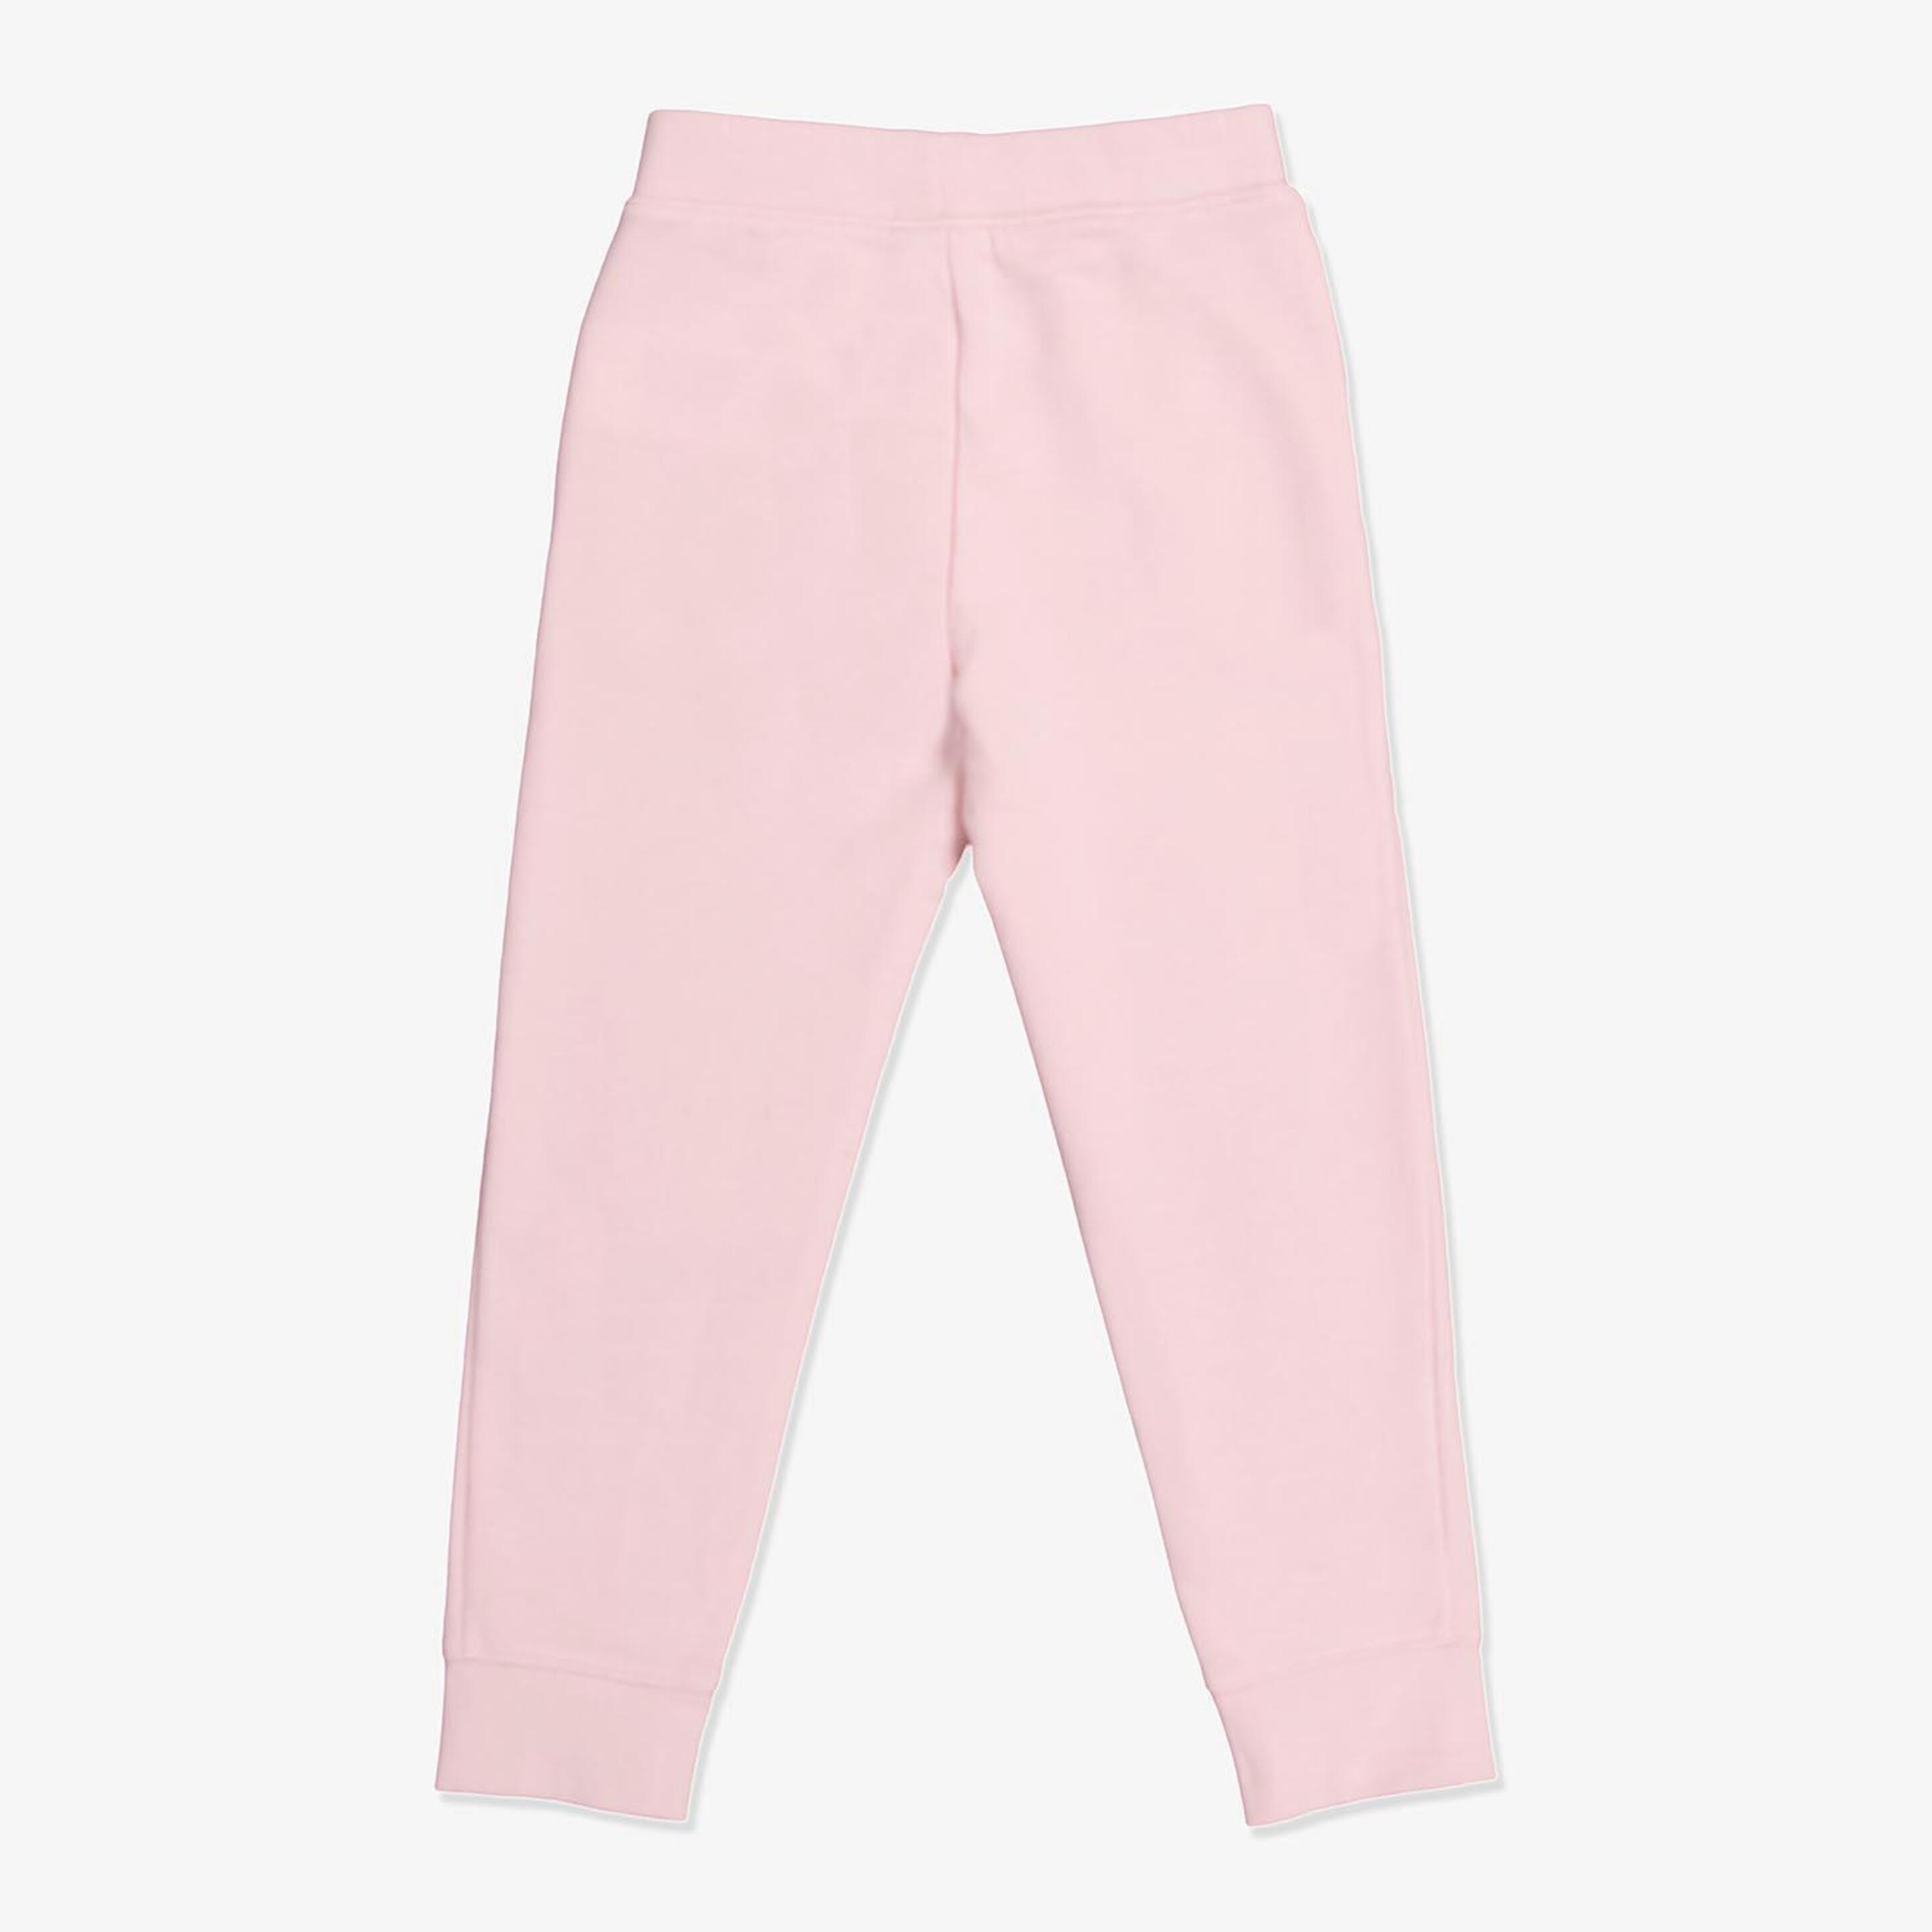 Pantalón Nike - Rosa - Pantalón Niña